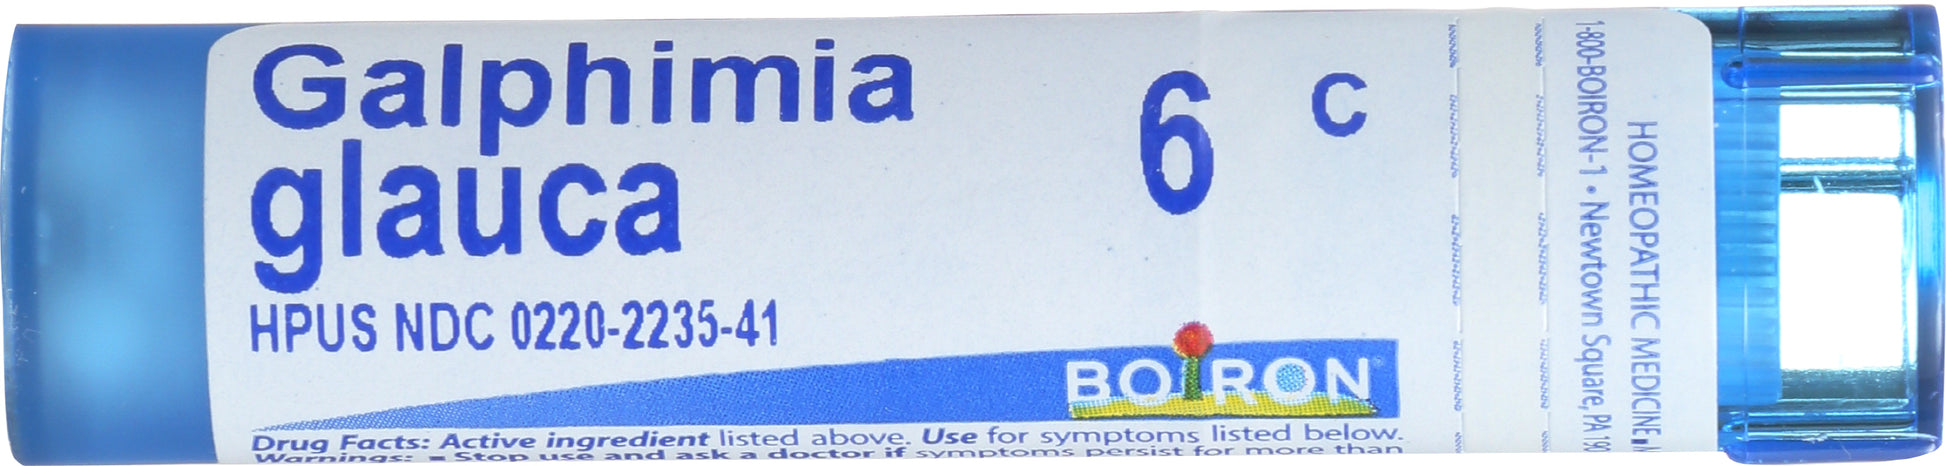 Boiron Galphimia glauca 6c